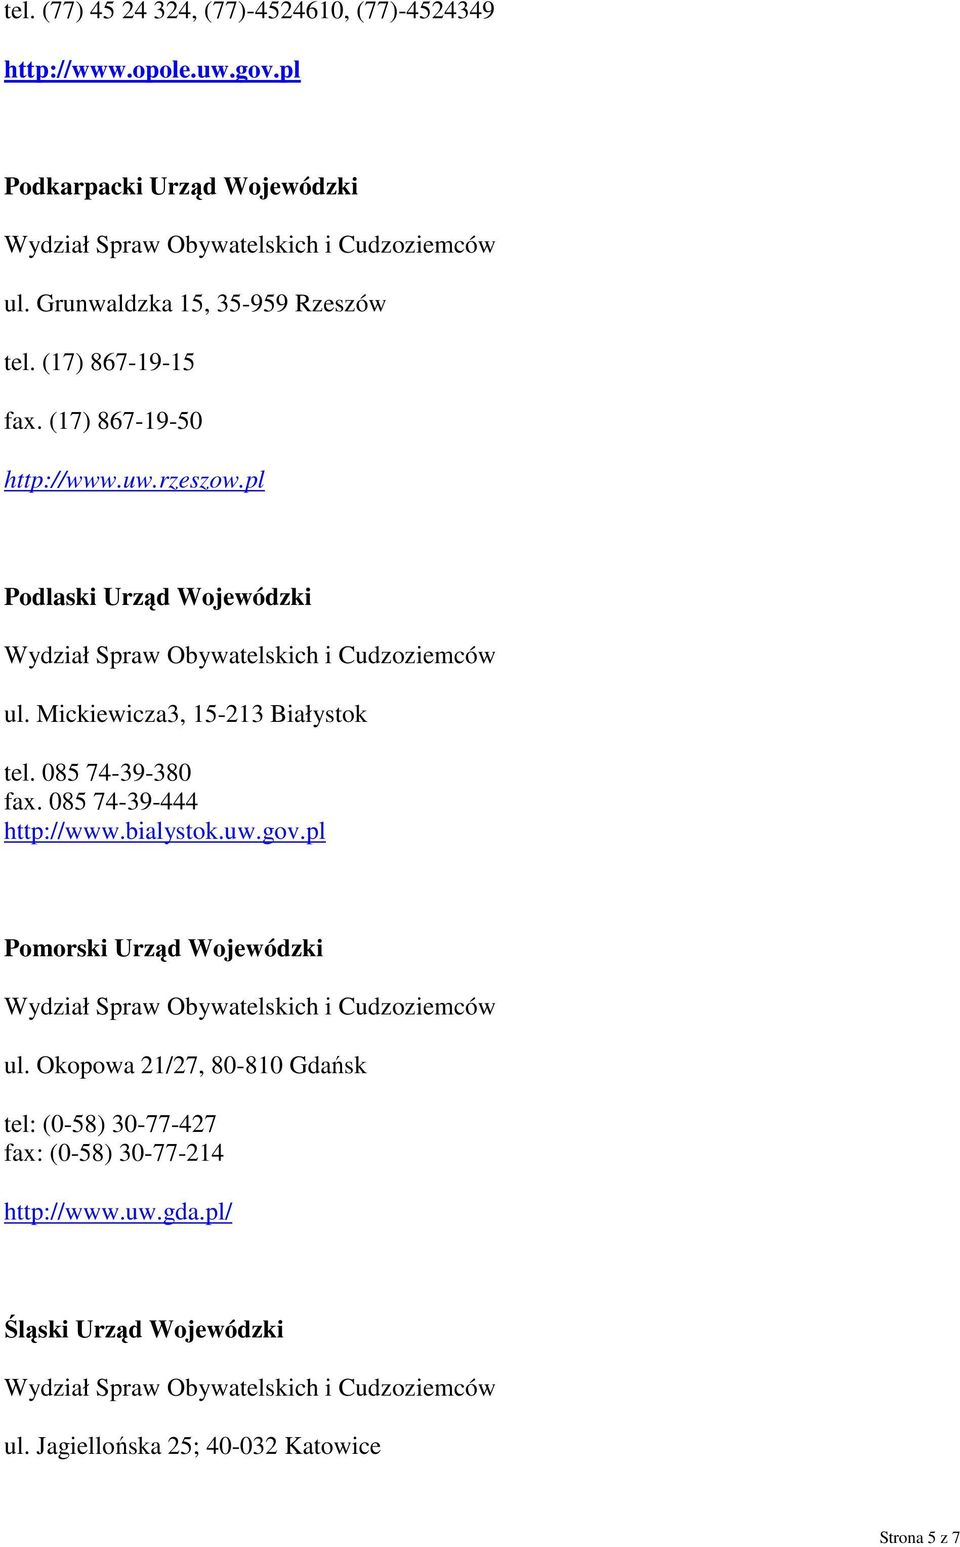 Mickiewicza3, 15-213 Białystok tel. 085 74-39-380 fax. 085 74-39-444 http://www.bialystok.uw.gov.pl Pomorski Urząd Wojewódzki ul.